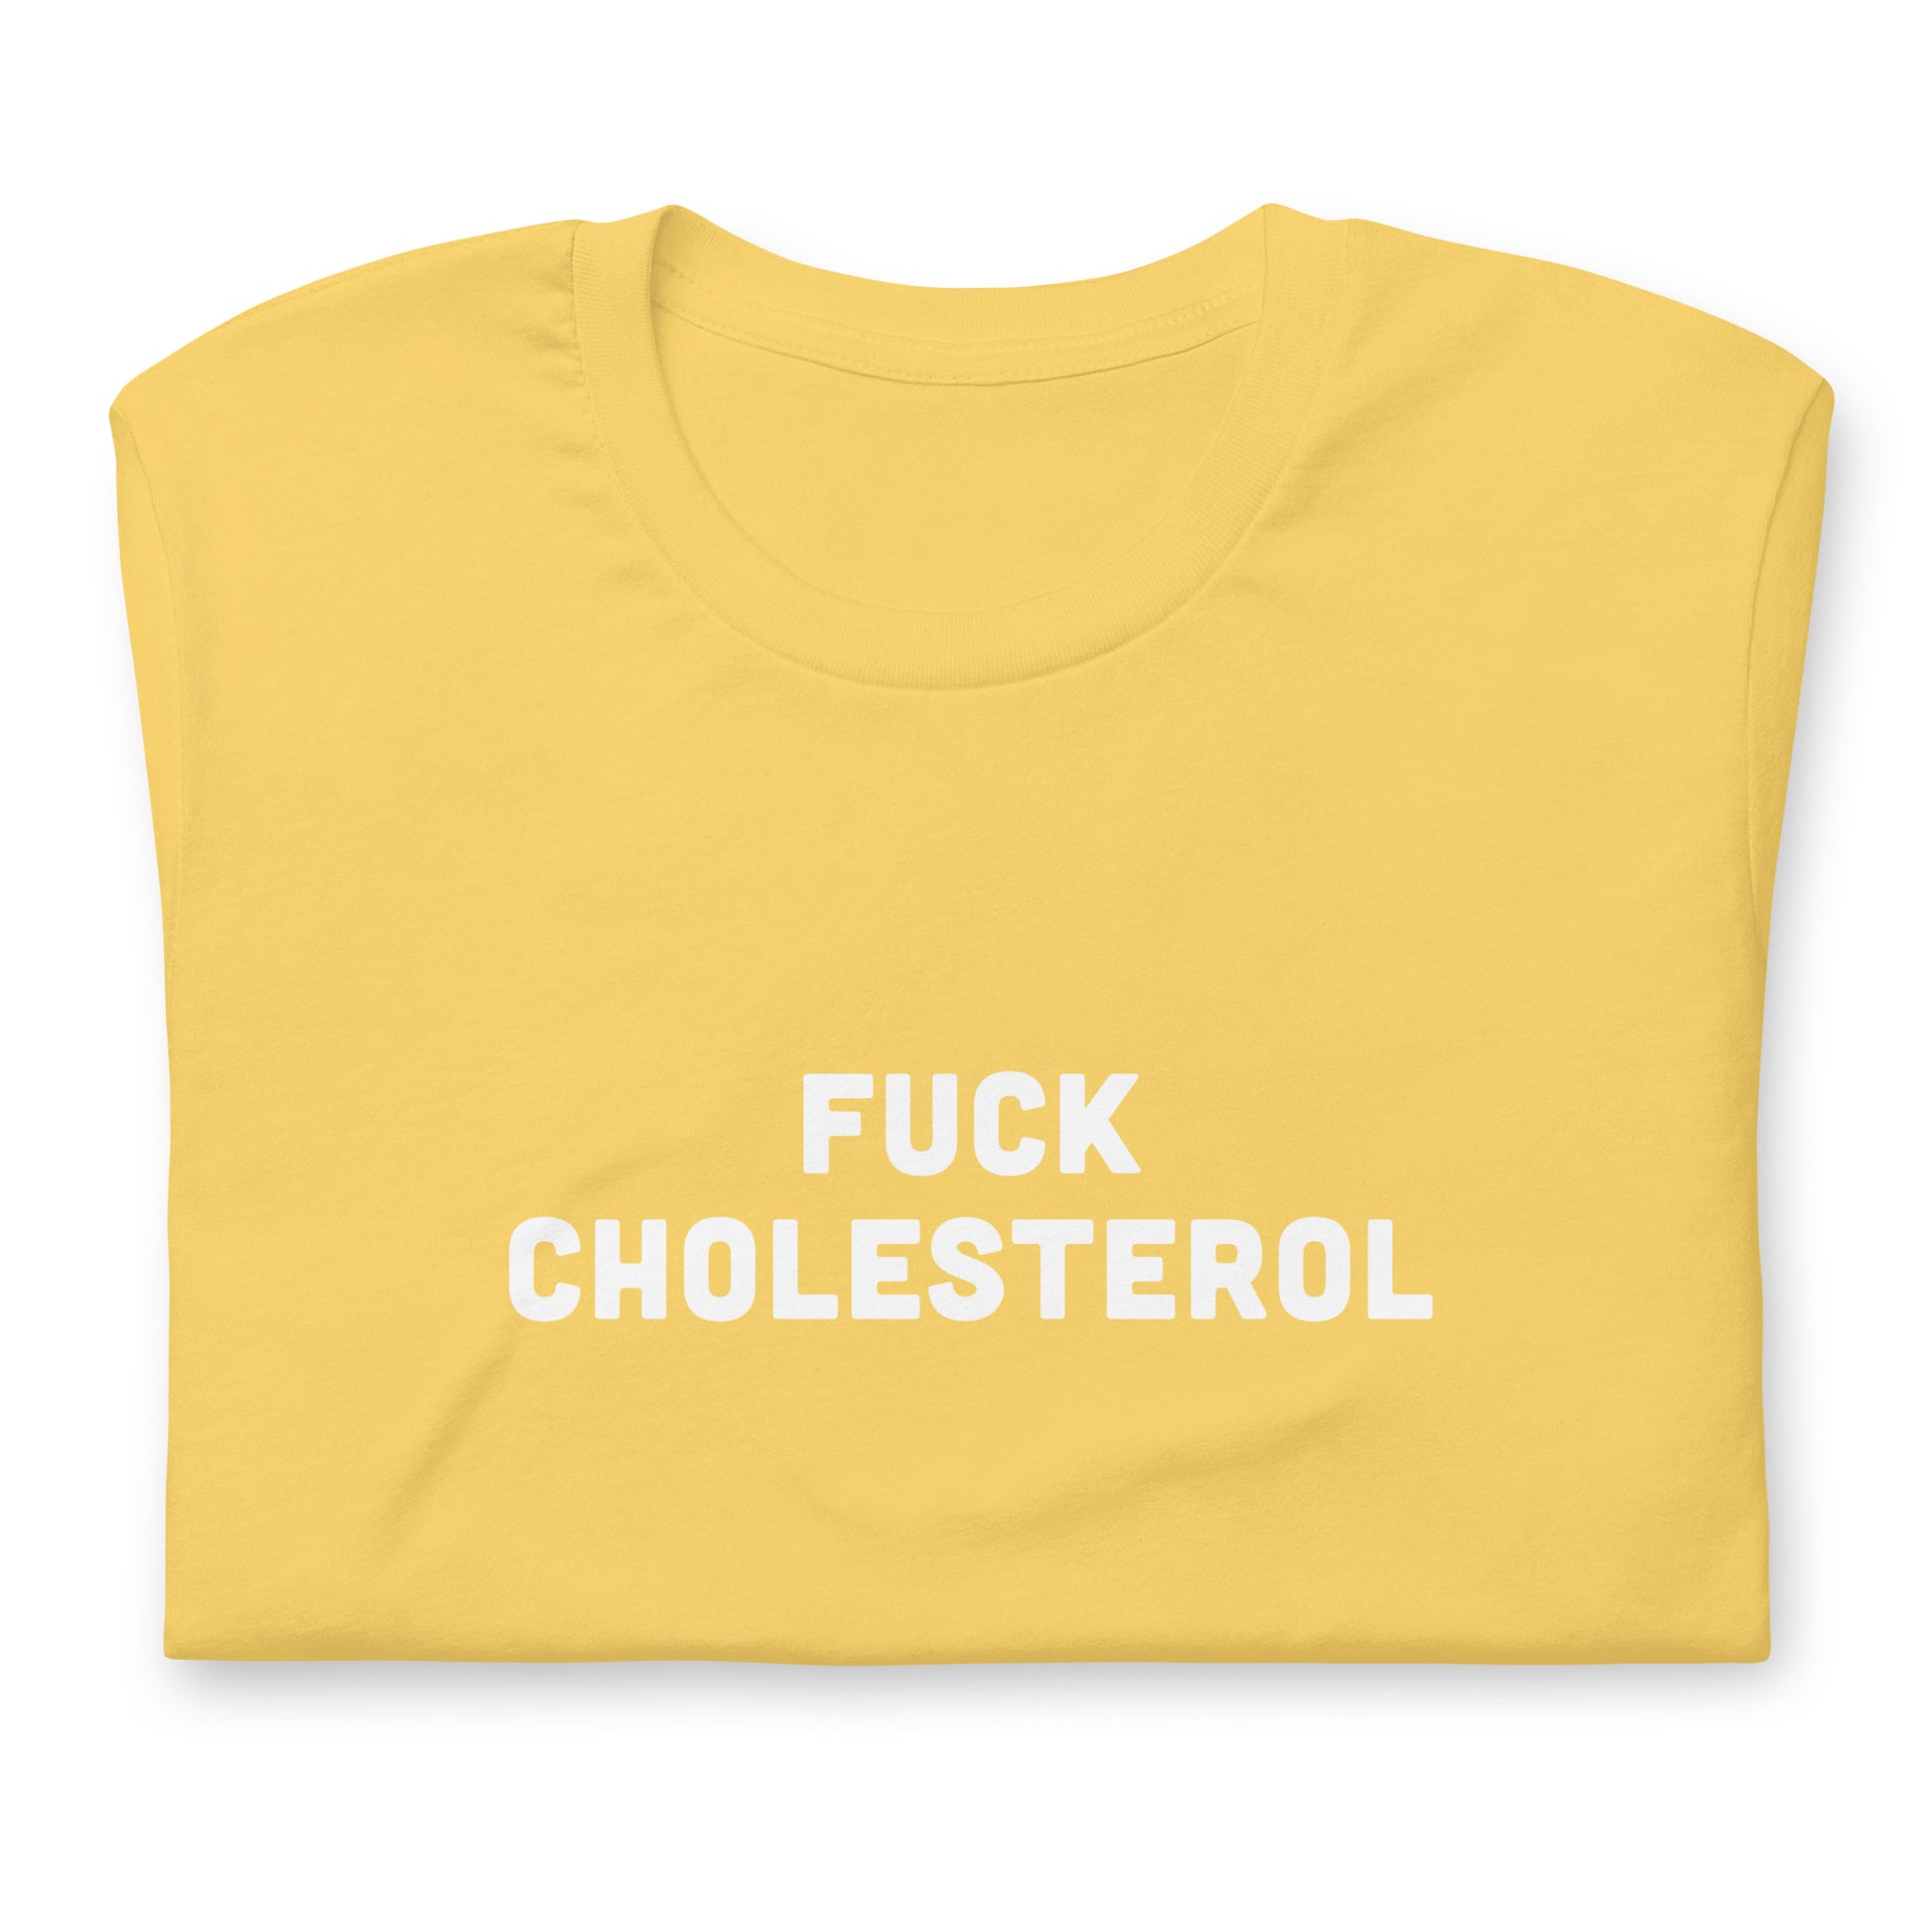 Fuck Cholesterol T-Shirt Size XL Color Asphalt